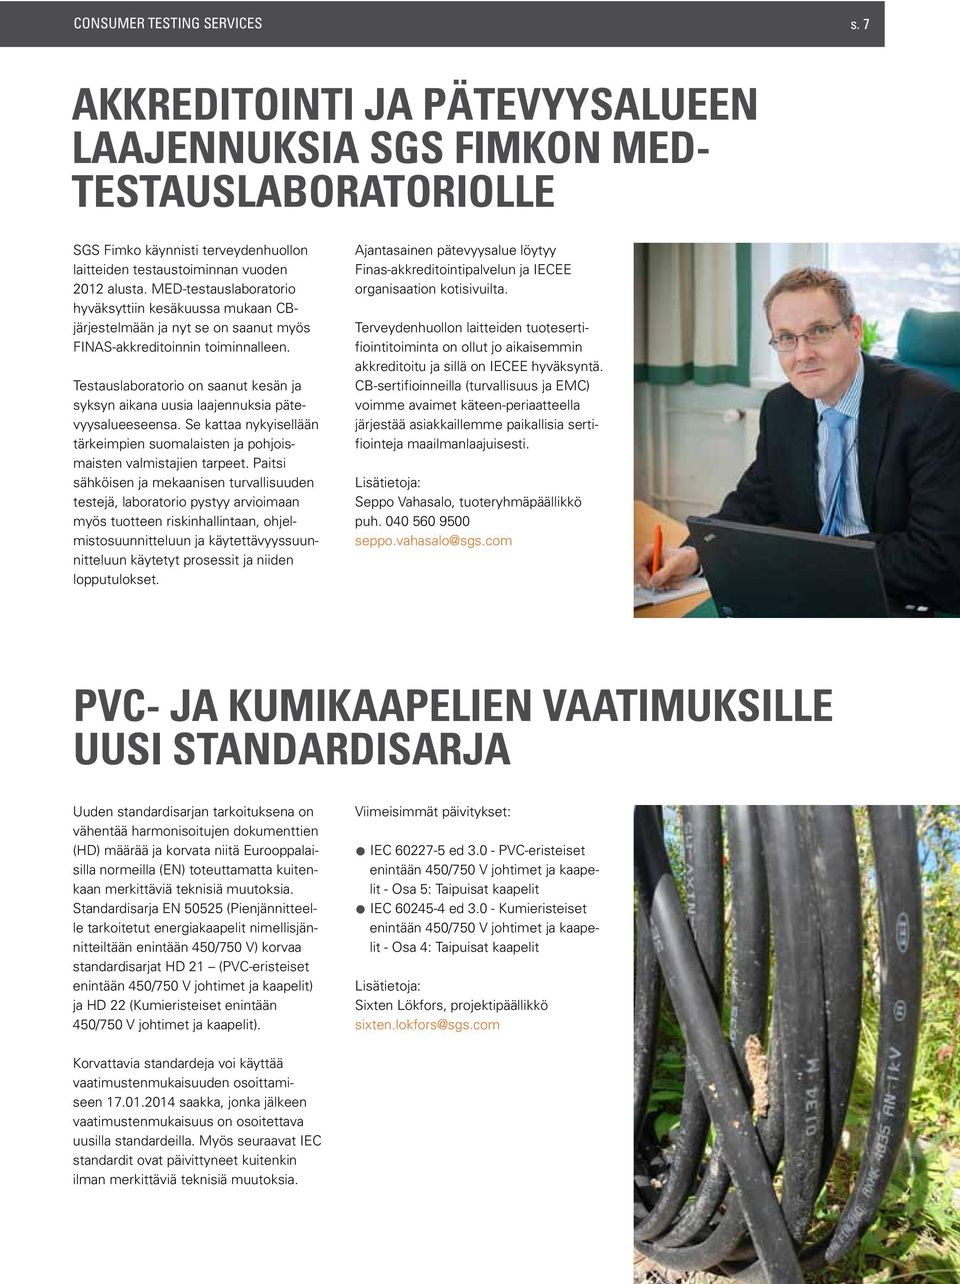 Testauslaboratorio on saanut kesän ja syksyn aikana uusia laajennuksia pätevyysalueeseensa. Se kattaa nykyisellään tärkeimpien suomalaisten ja pohjoismaisten valmistajien tarpeet.